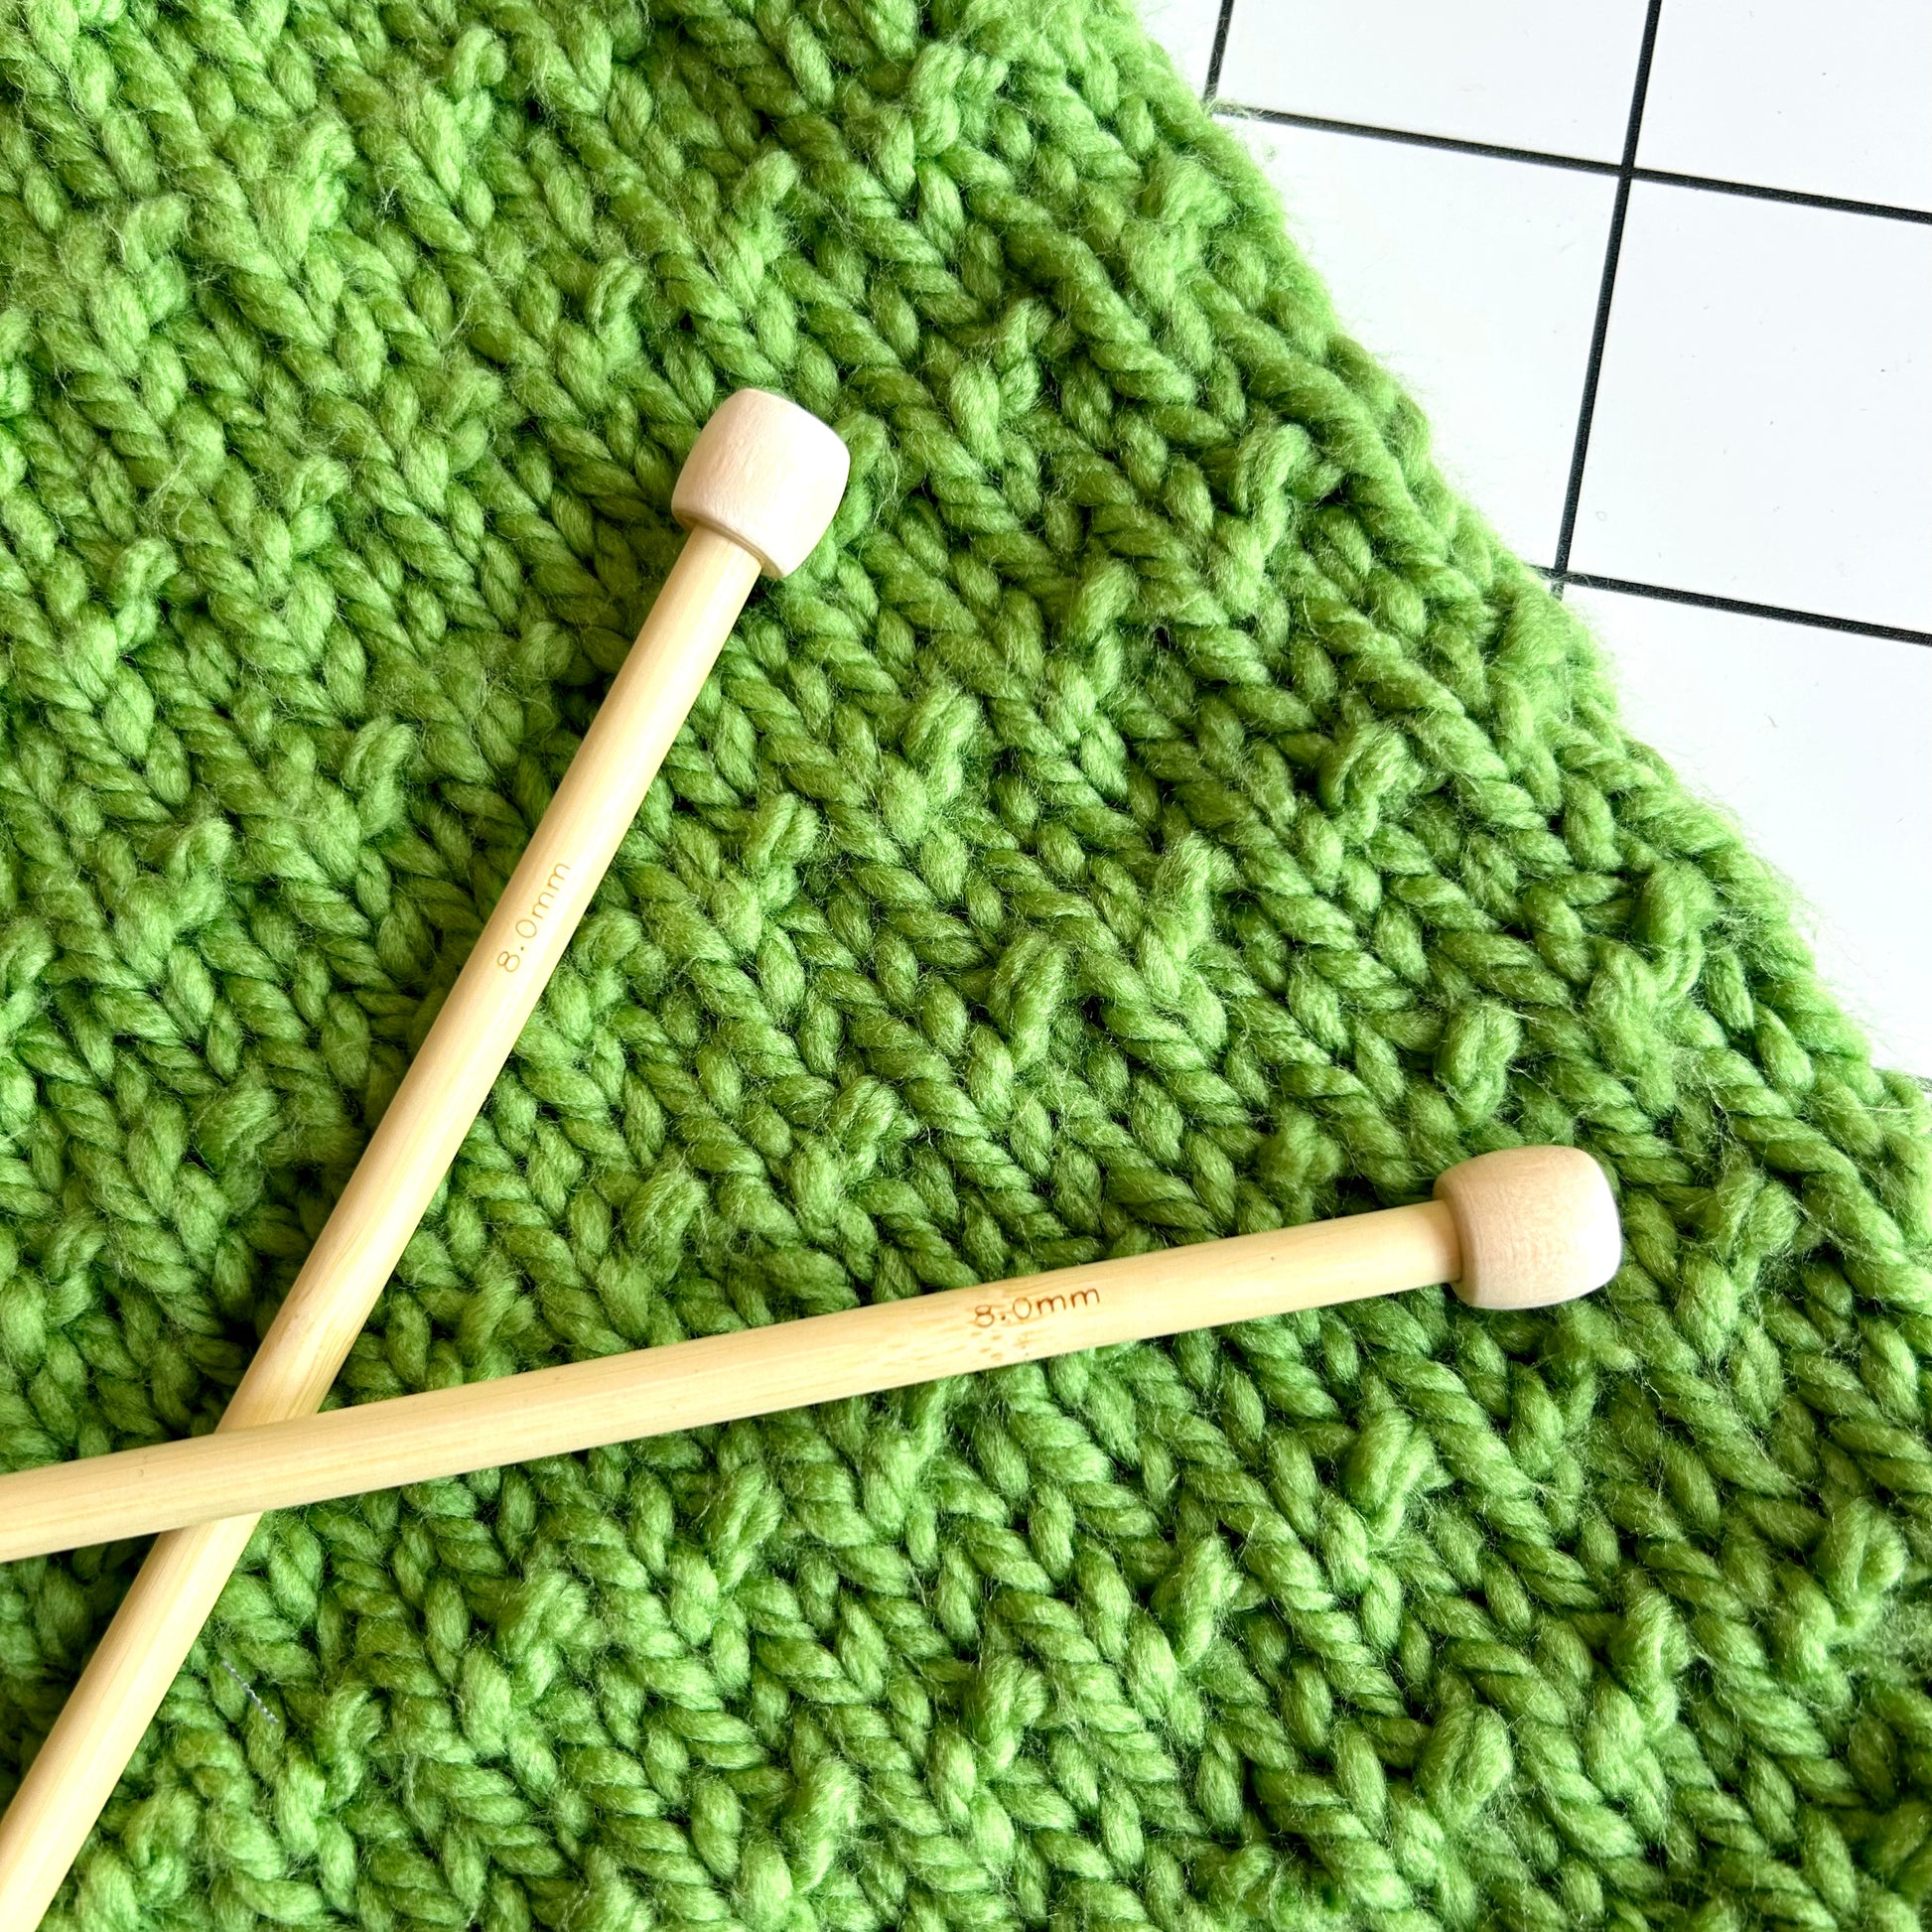 8mm knitting needles | straight knitting needles | short length | bamboo